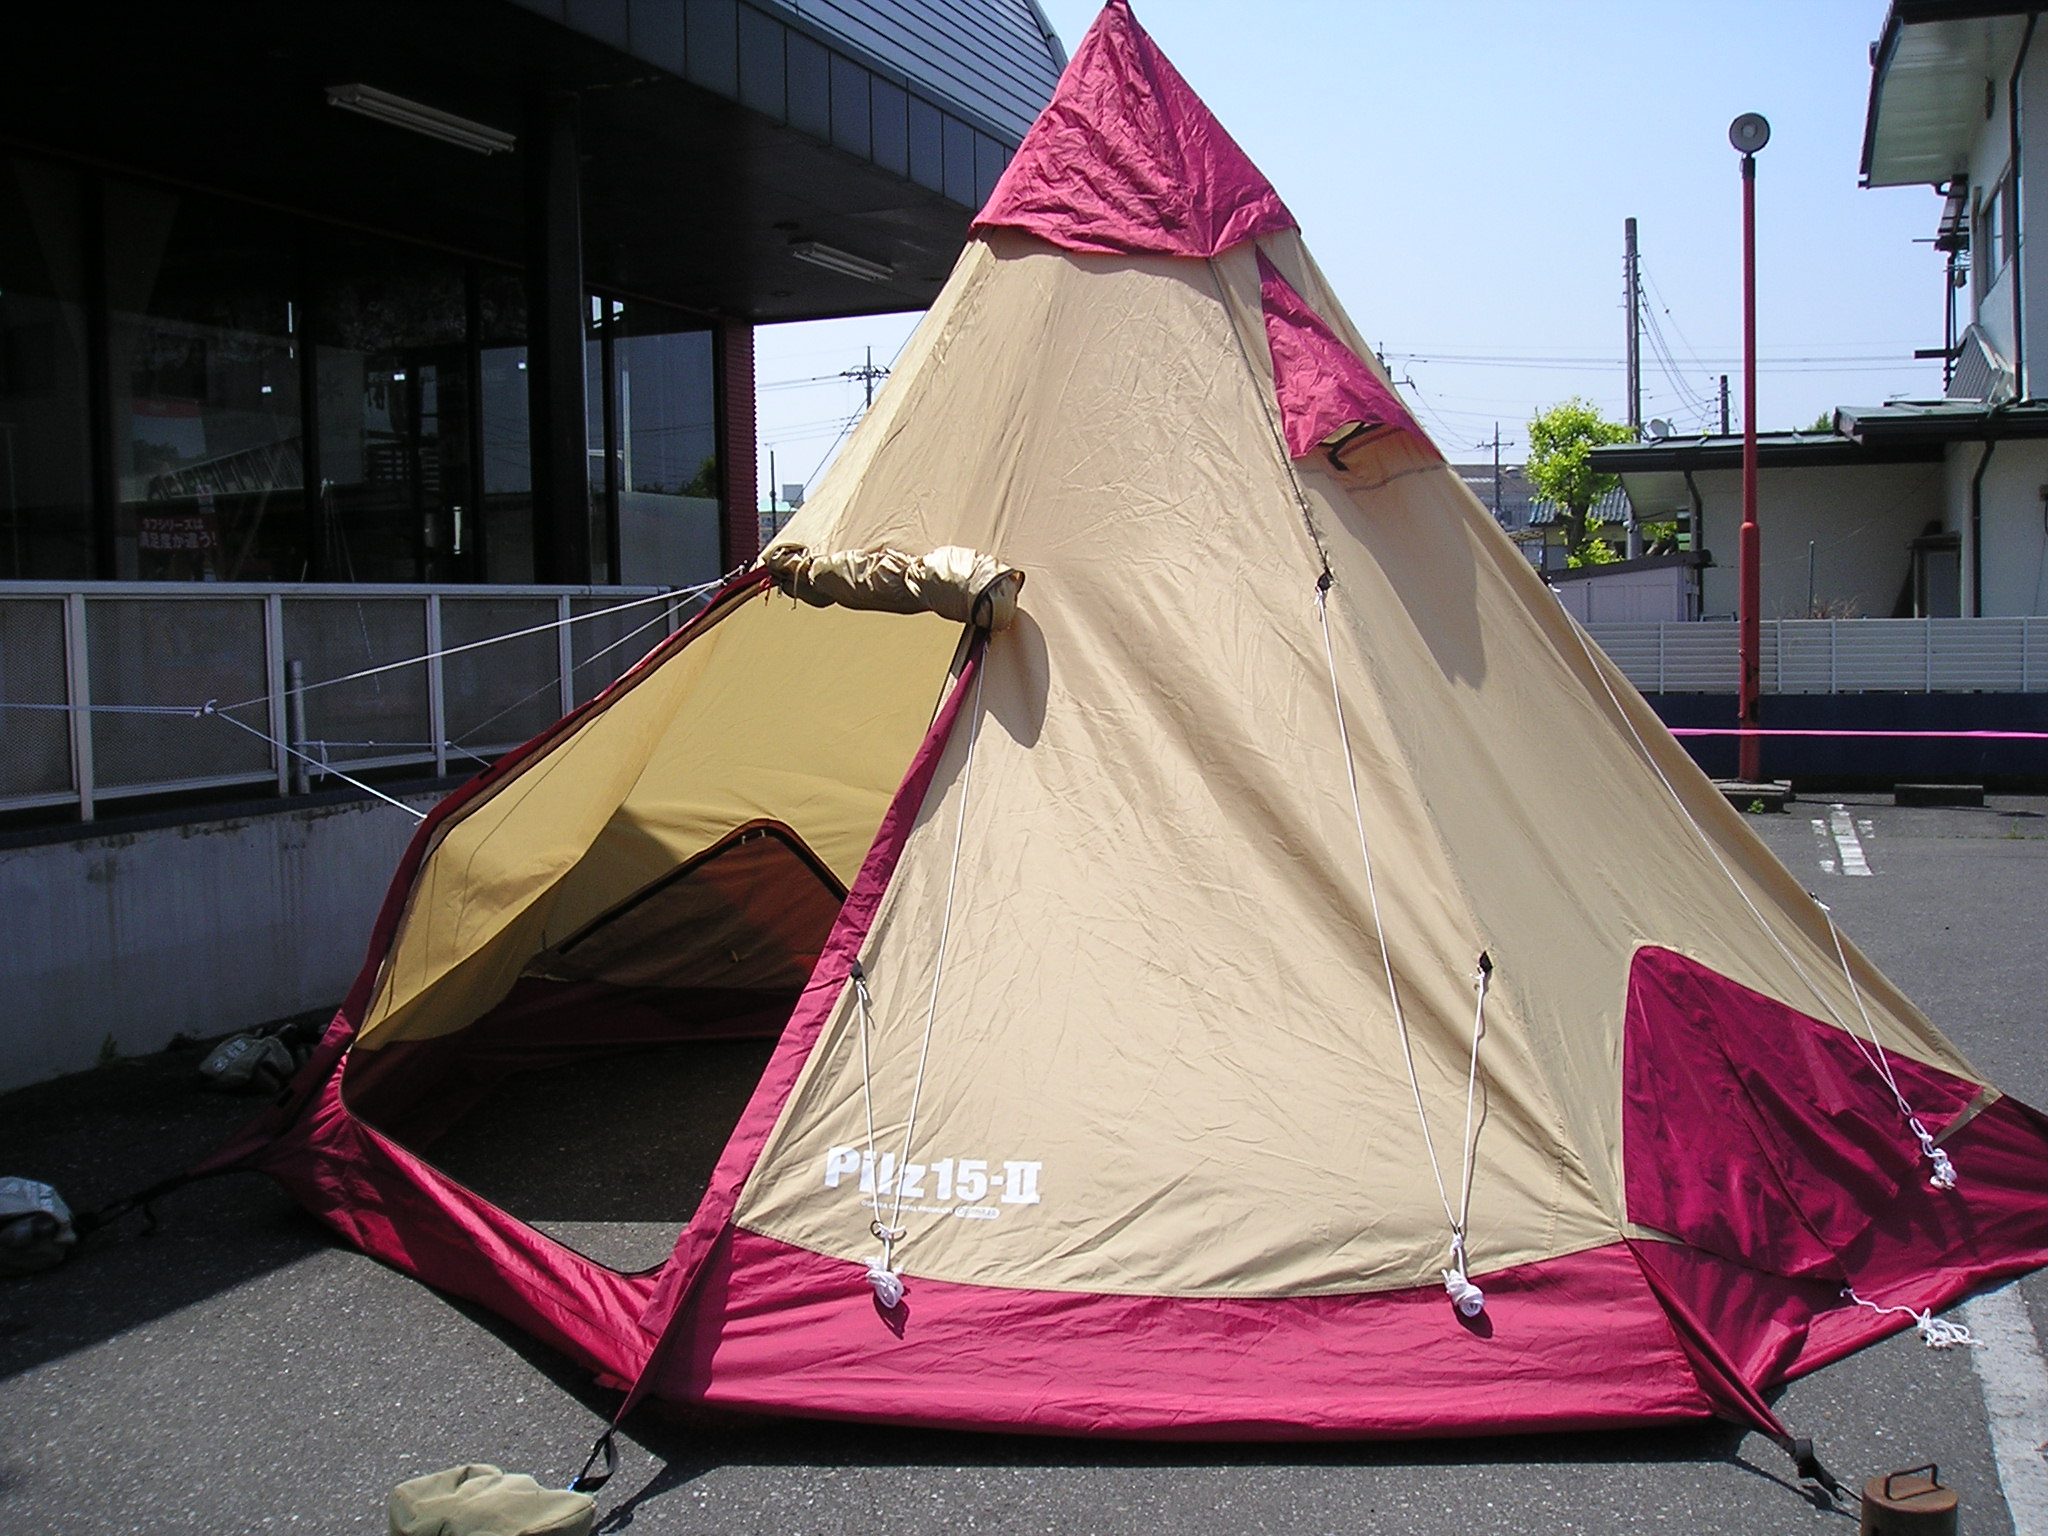 テント/タープオガワ ピルツ 15-Ⅱ レッド×サンド テント - テント/タープ